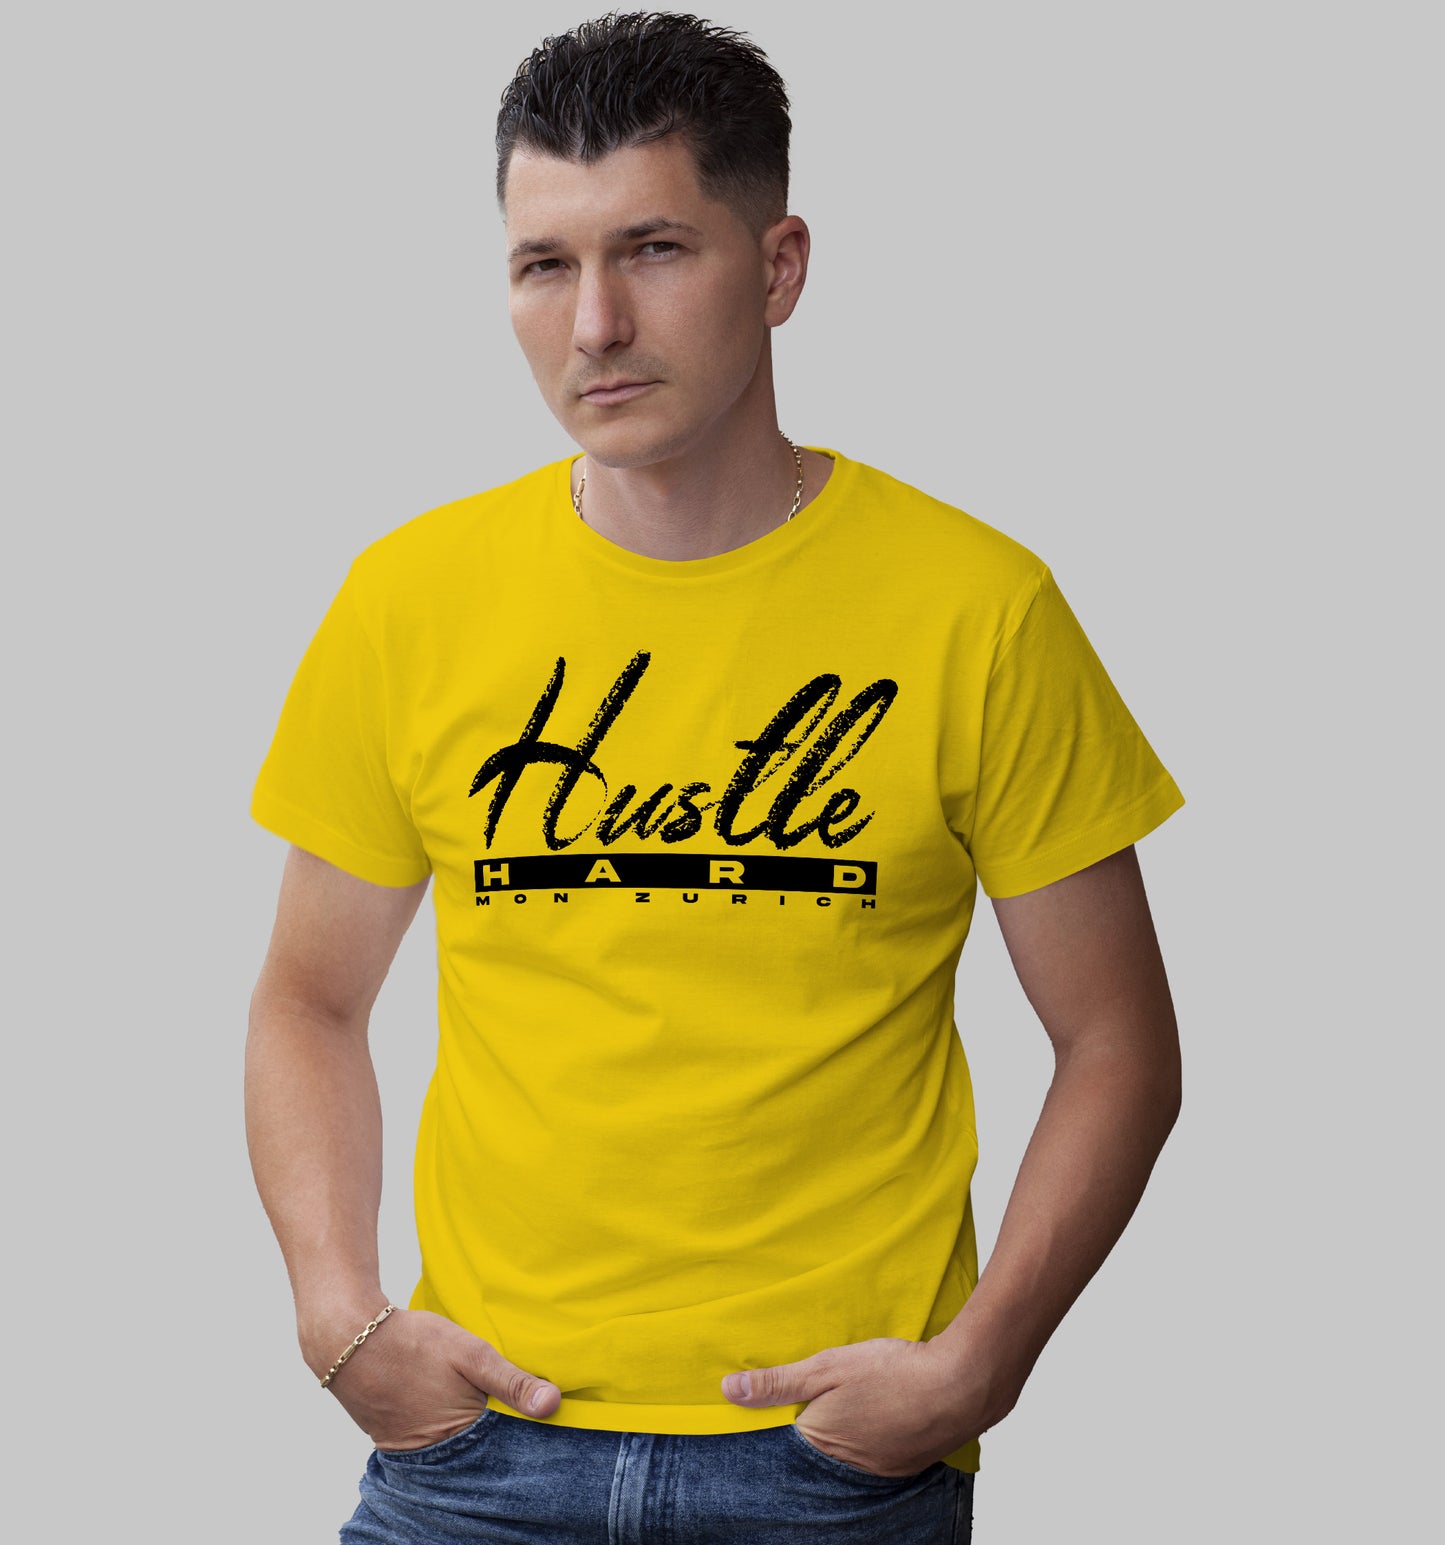 Hustle Hard T-Shirt In Light - Mon Zurich Originals